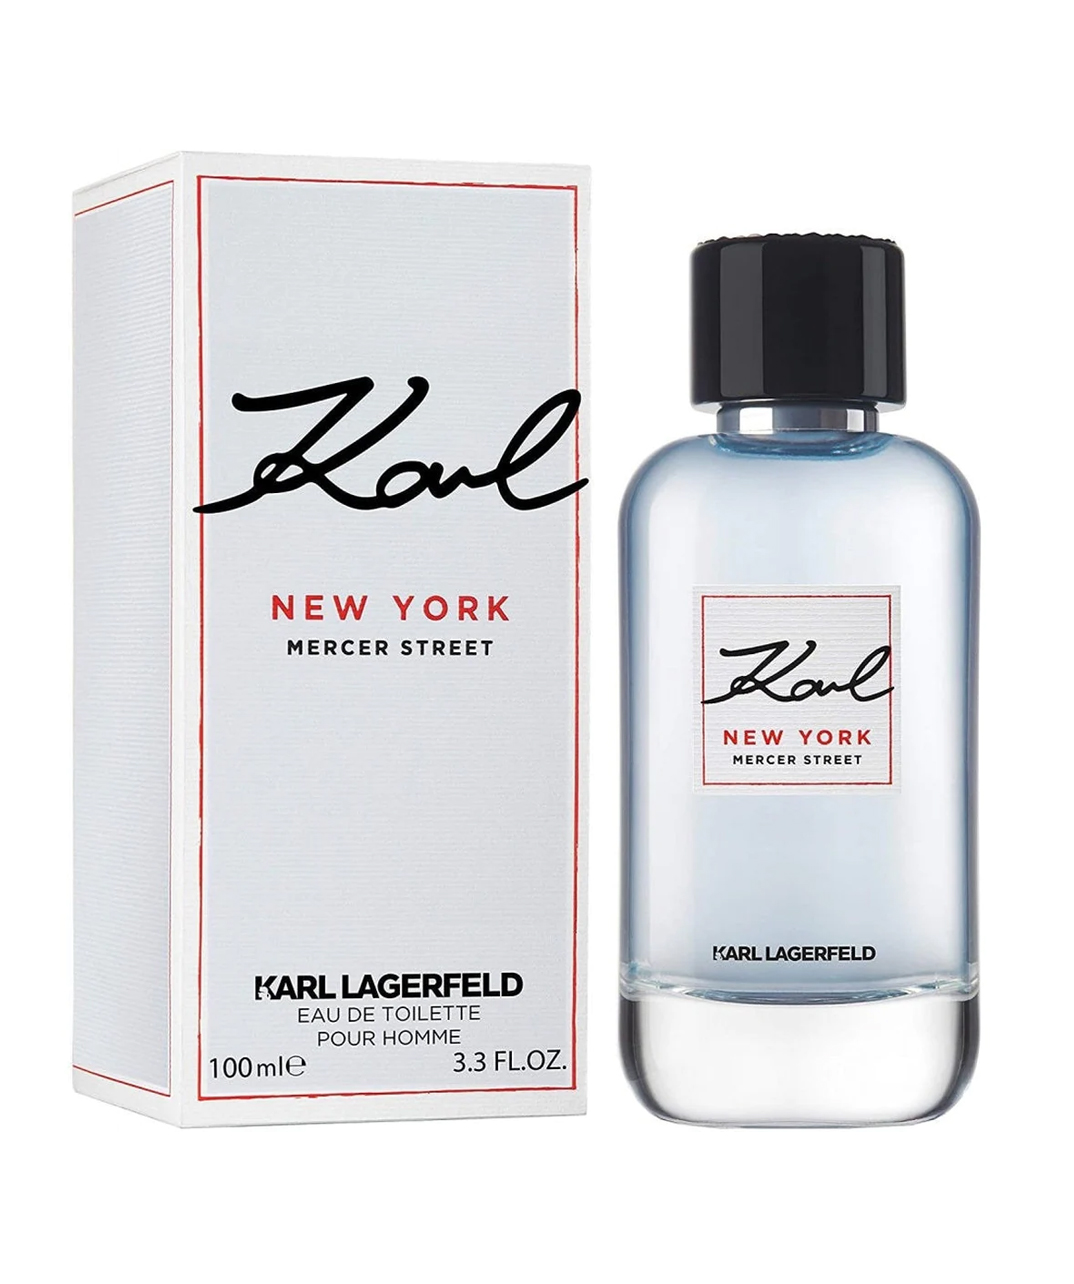 Perfume «Karl Lagerfeld» Mercer Street New York, for men, 100 ml